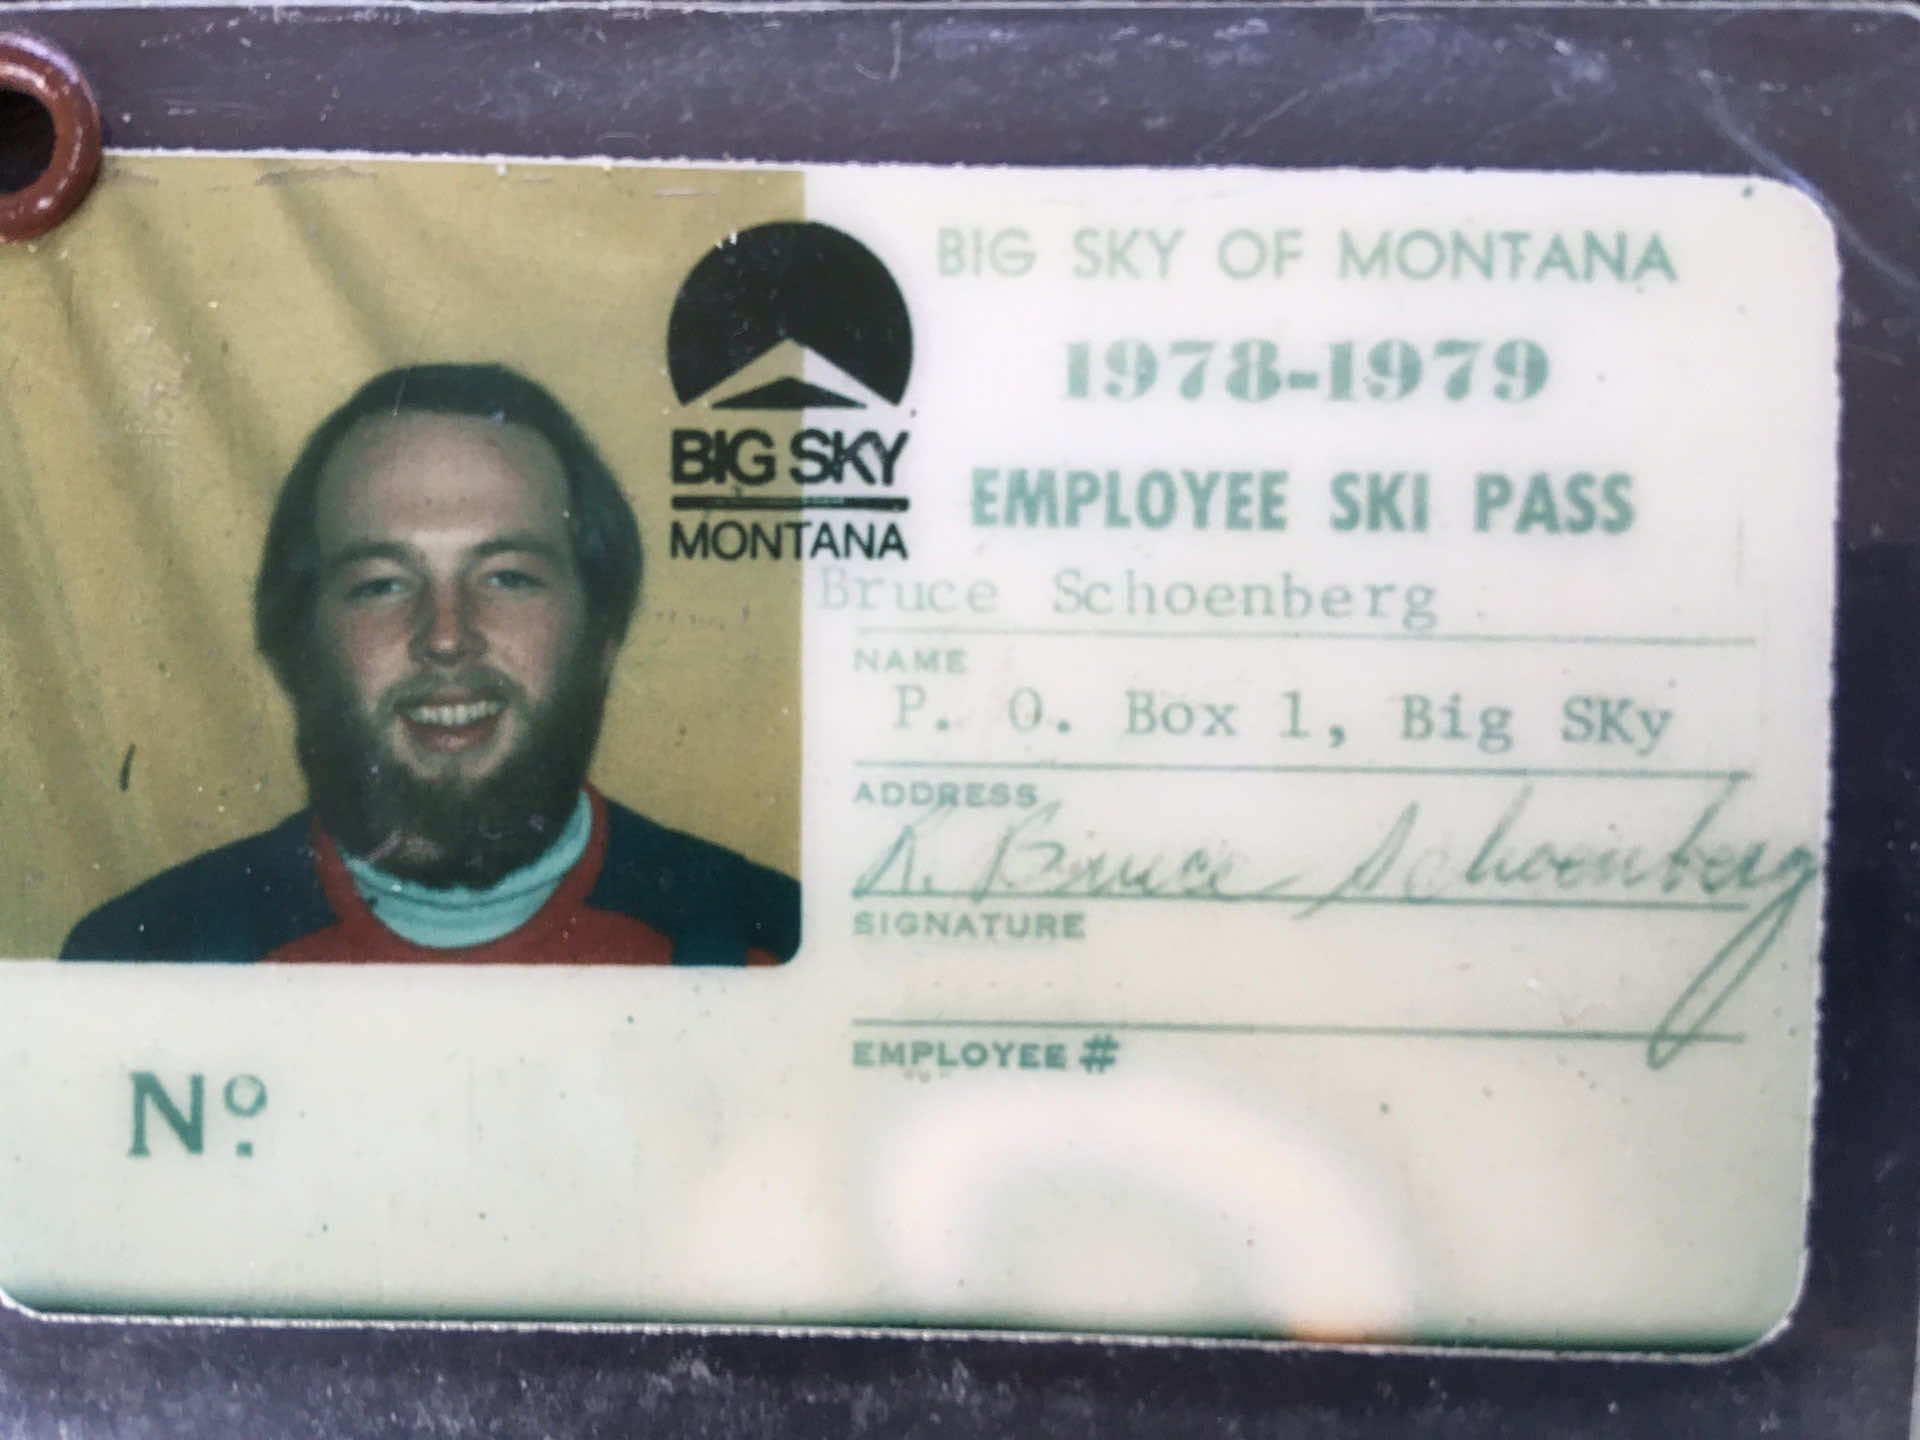 Bruce Schoneberg's 1978 Ski Pass